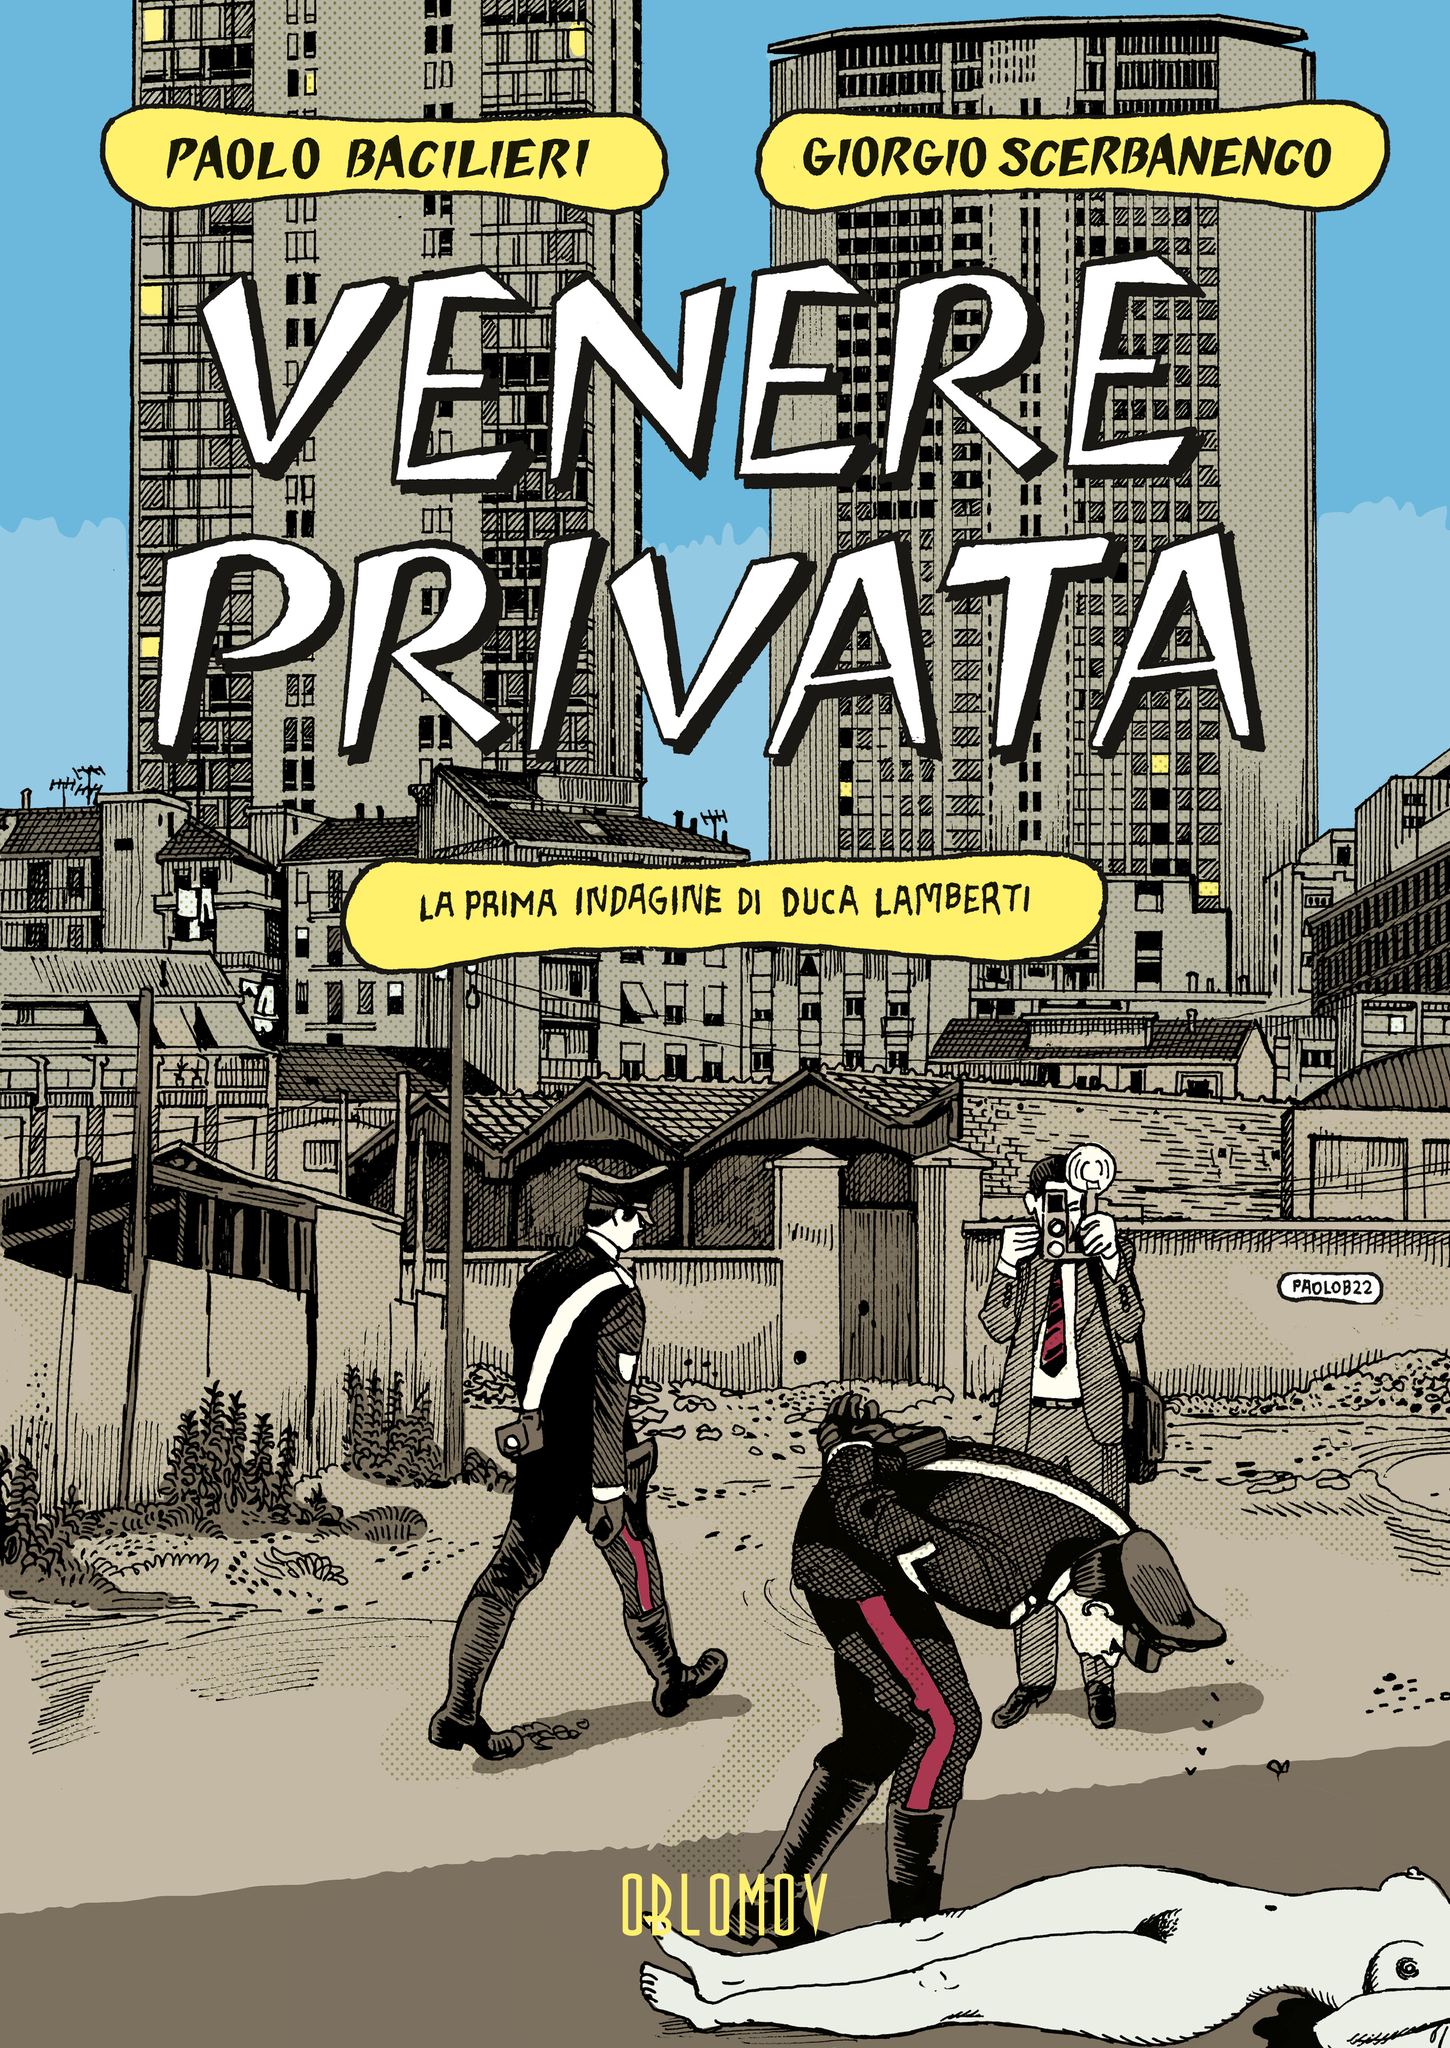 Paolo Bacilieri ritorna con il nuovo fumetto “Venere privata”